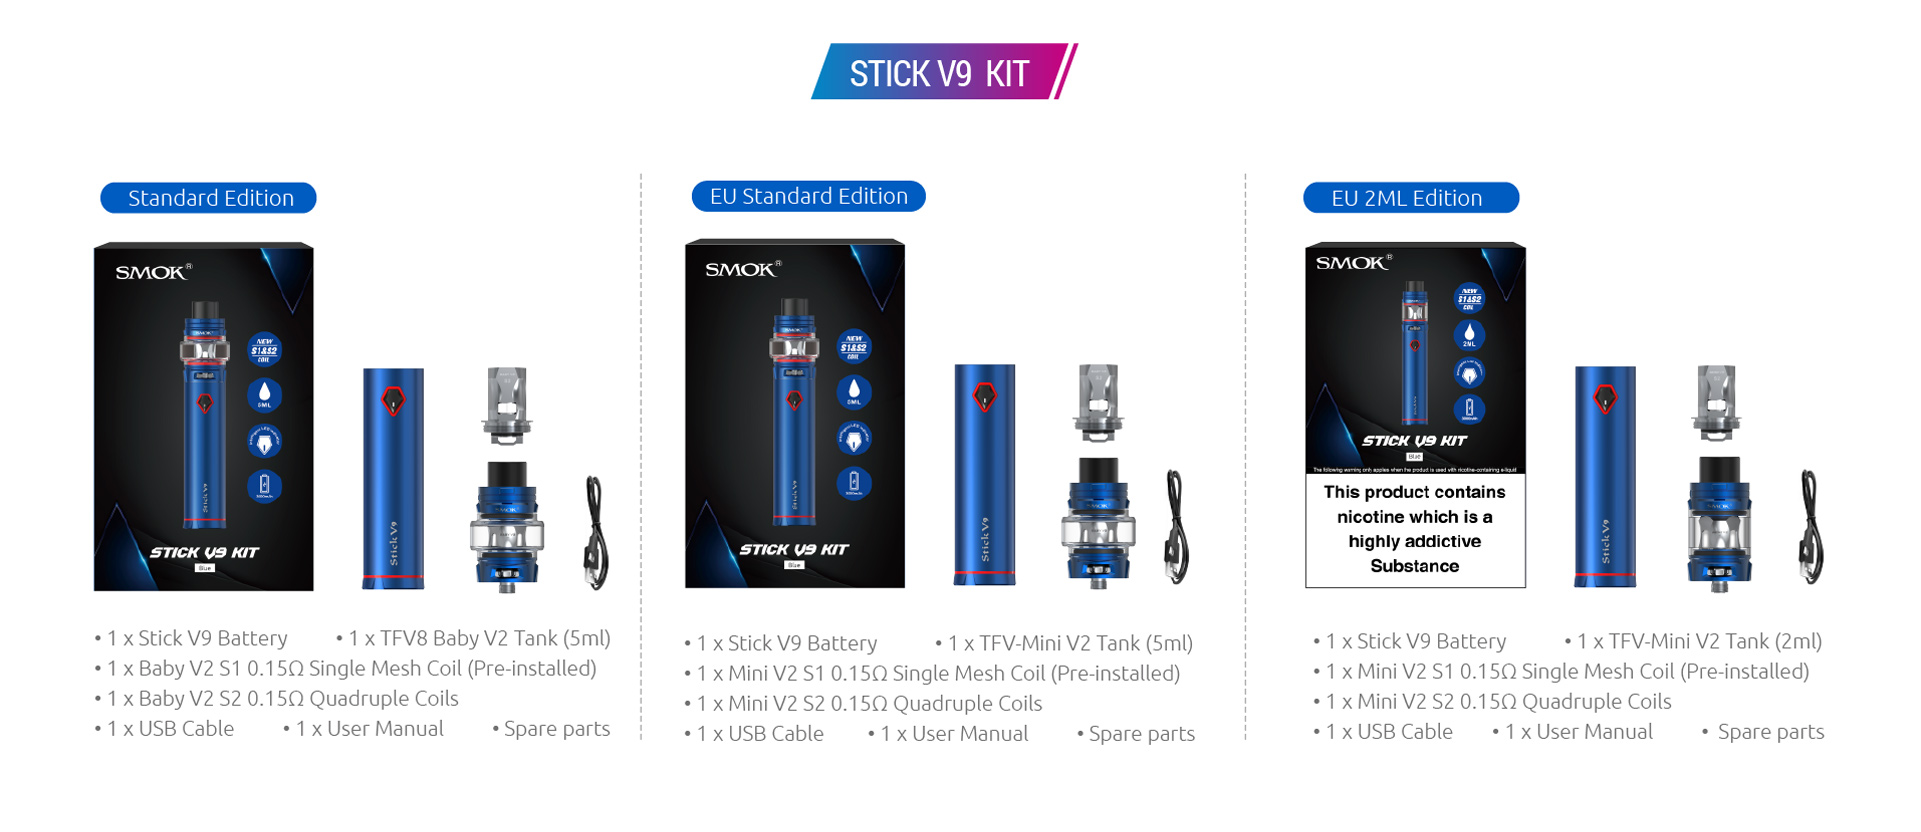 The Kit Include - SMOK Stick V9 Kit